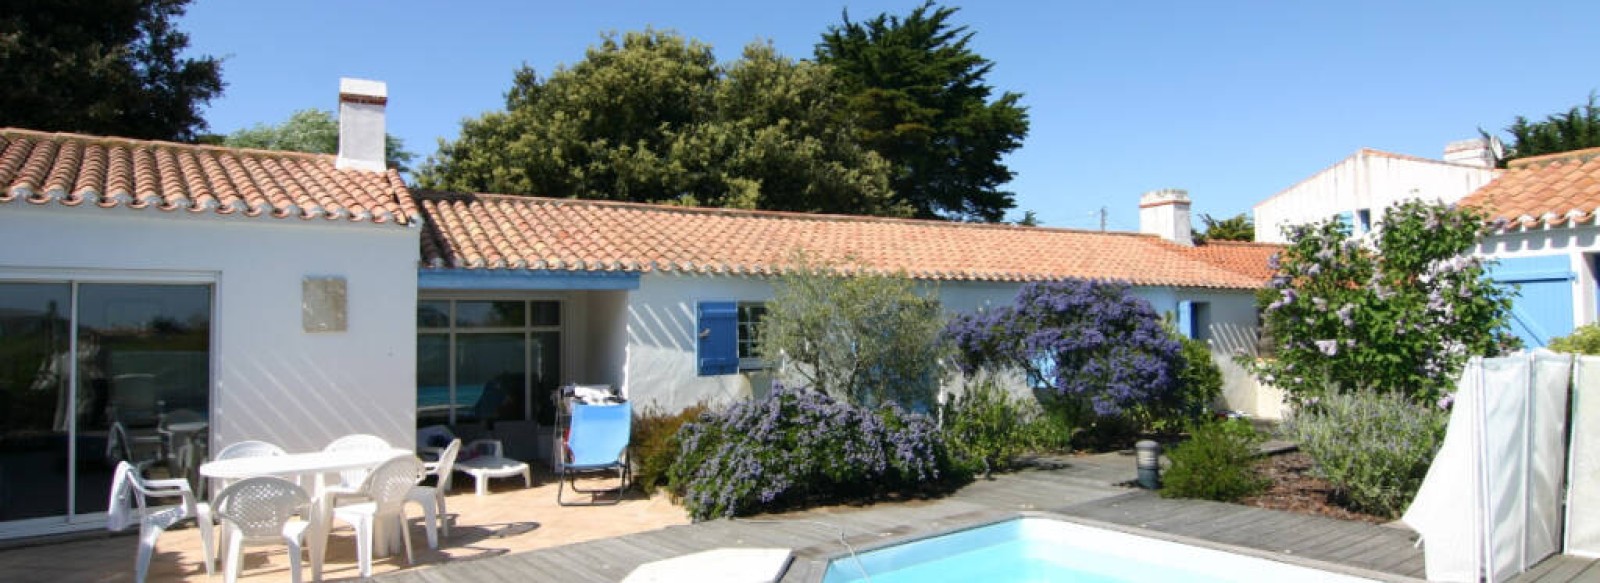 Villa de plain-pied avec piscine a 300m de la plage - L'Herbaudiere - Noirmoutier